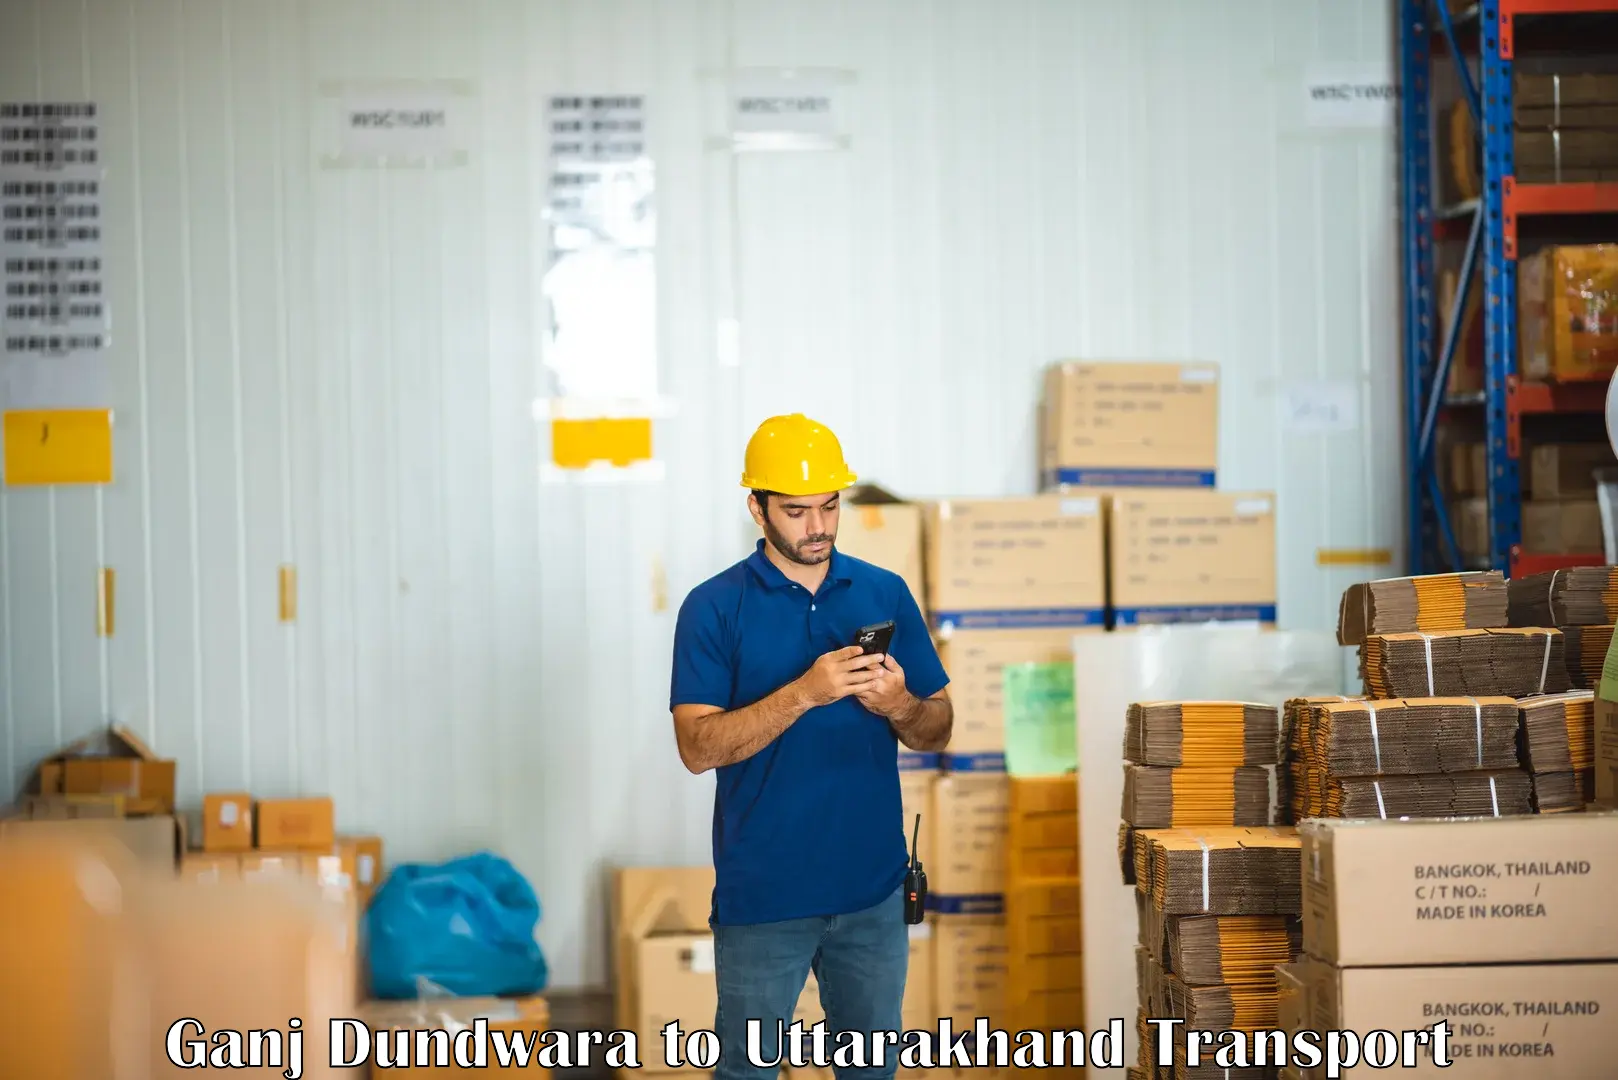 Domestic goods transportation services Ganj Dundwara to Lansdowne